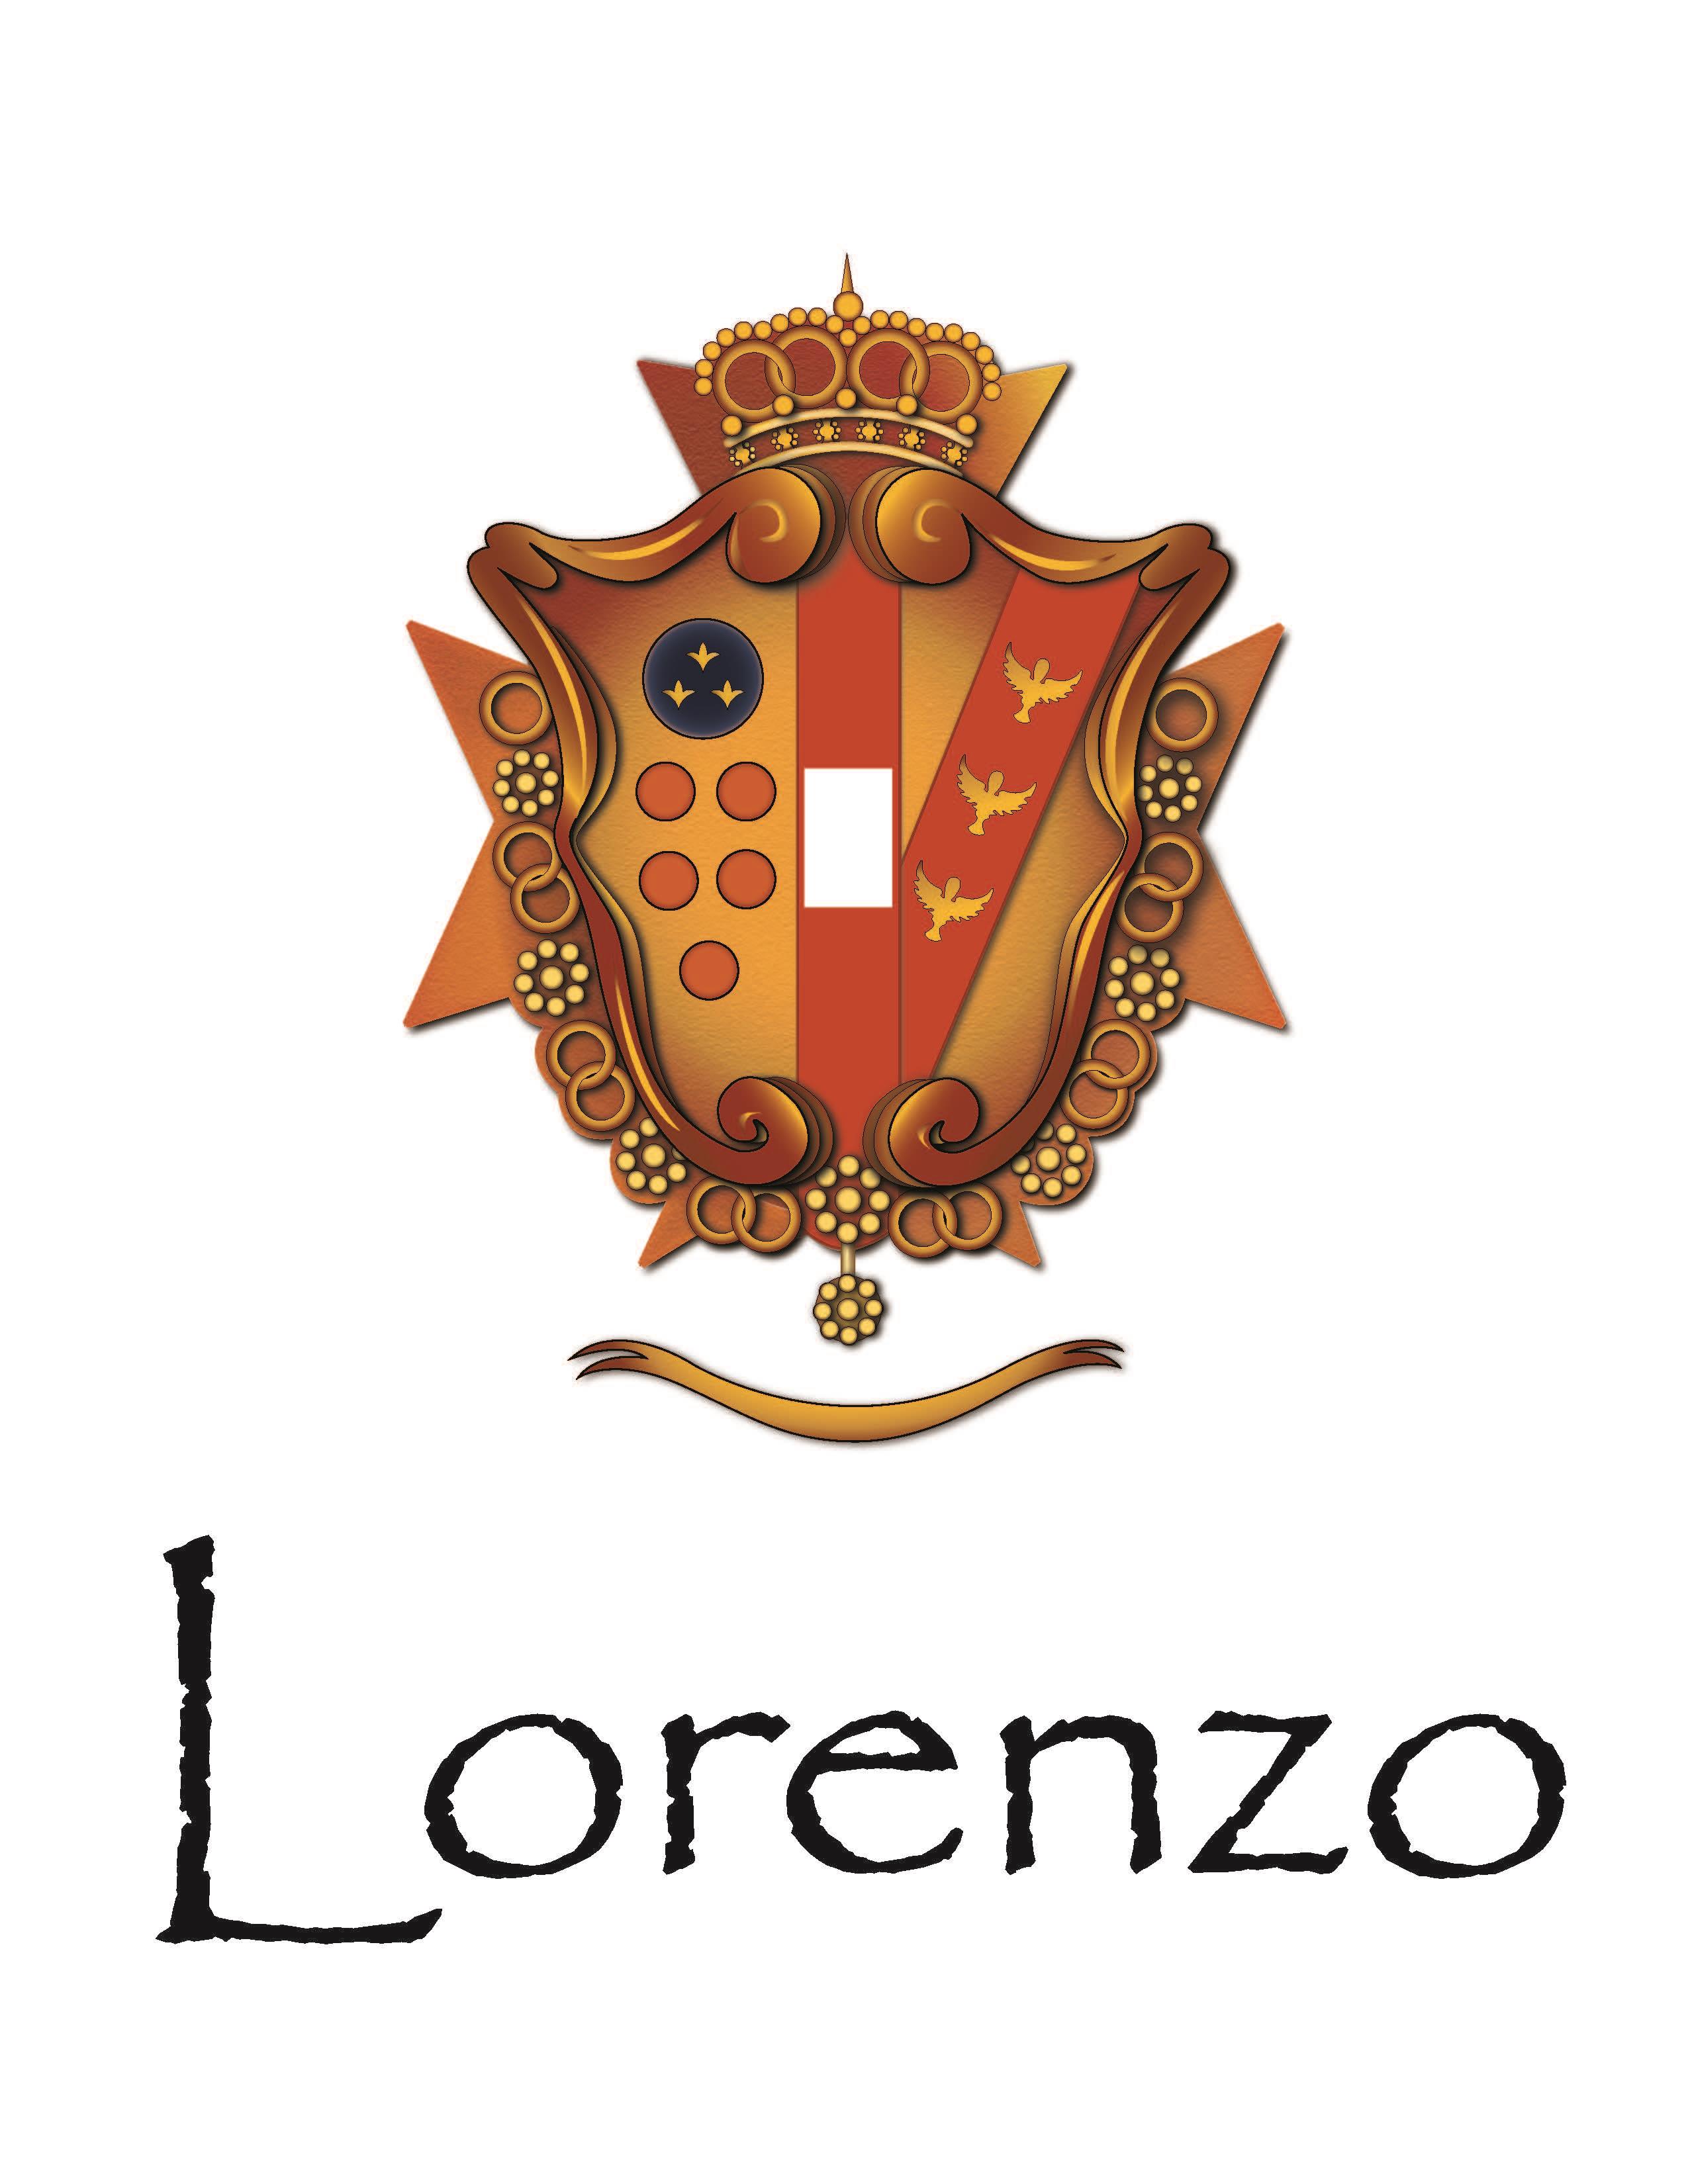 The Lorenzo